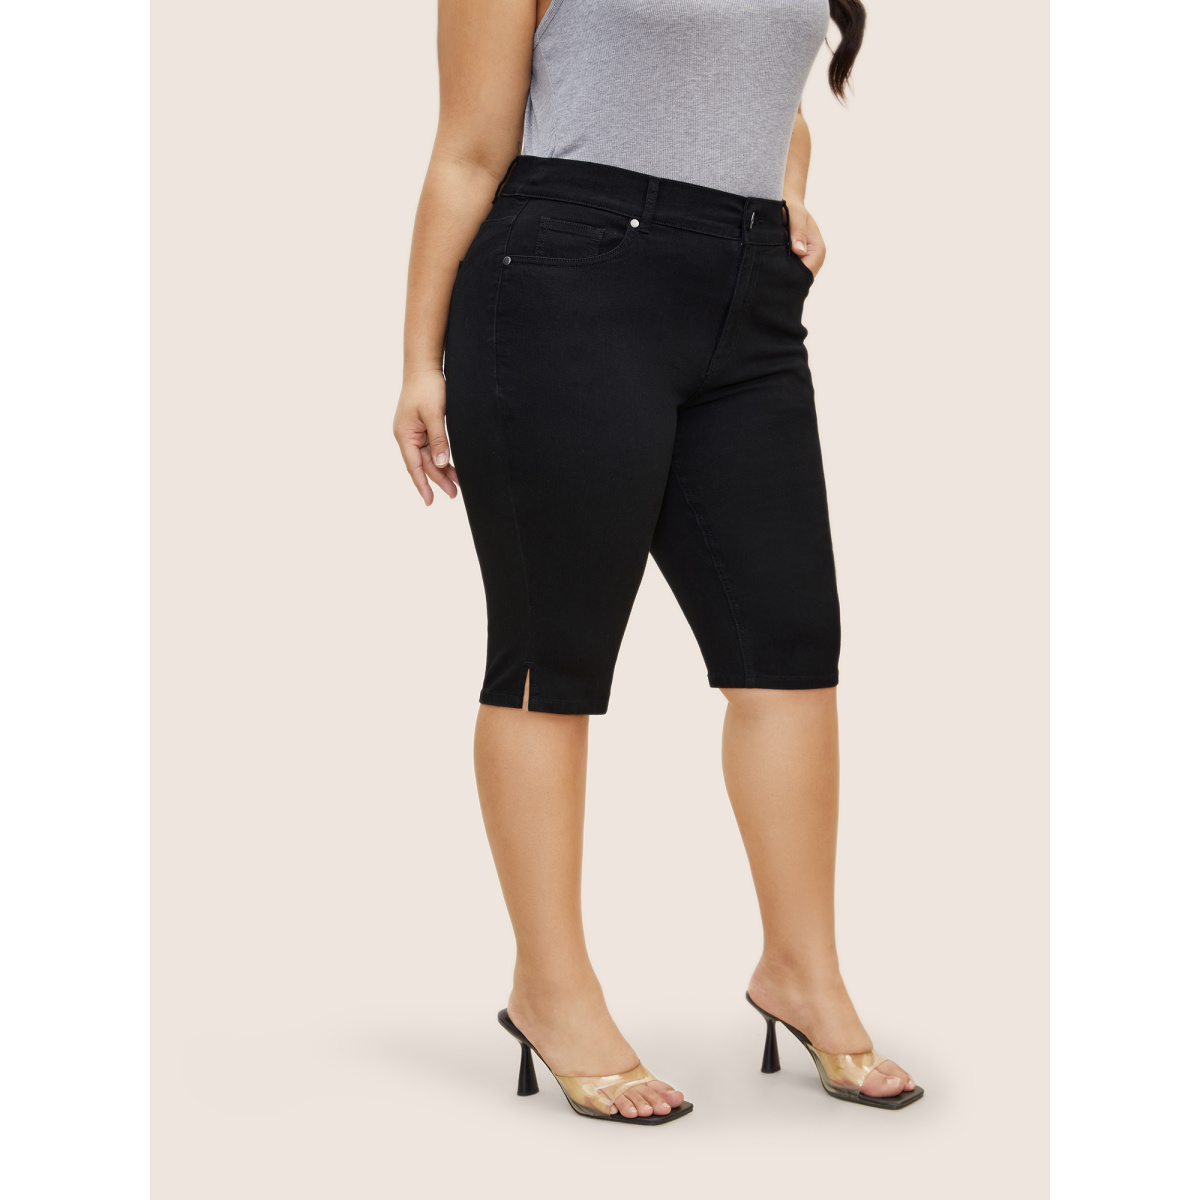 

Plus Size Black Wash Split Side Pull-on Jegging Jeans Women Black Casual Slit High stretch Slanted pocket Jeans BloomChic